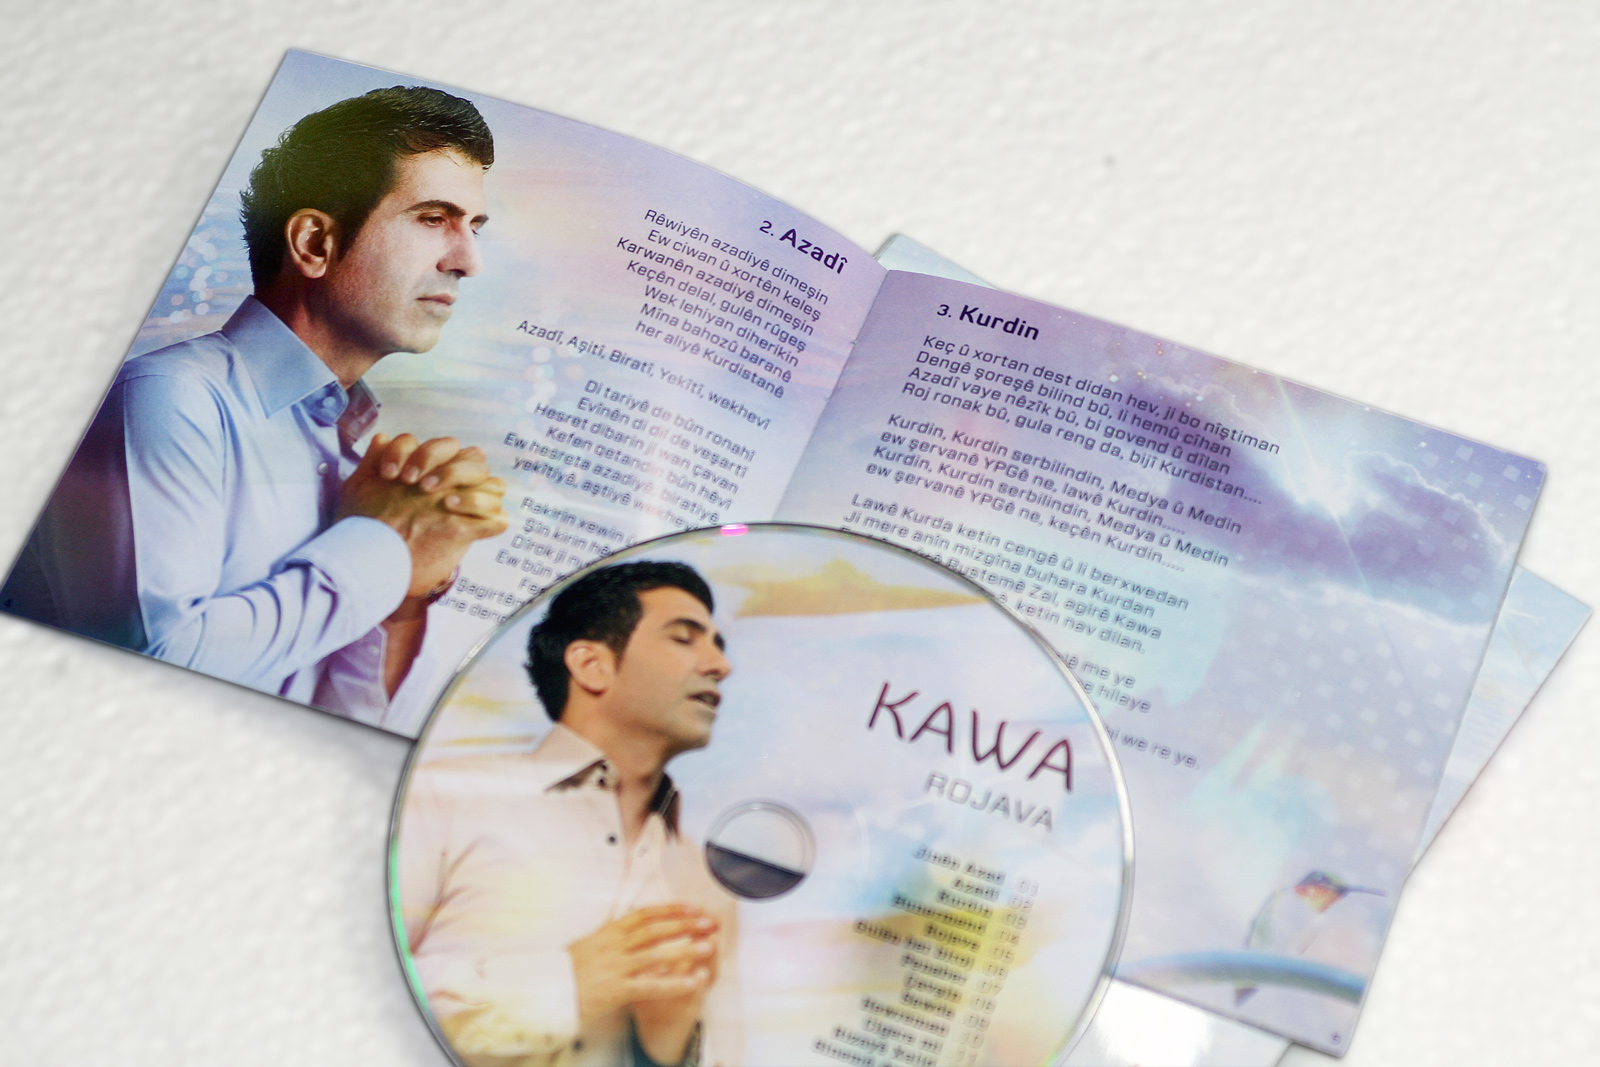 Kawa CD Booklet